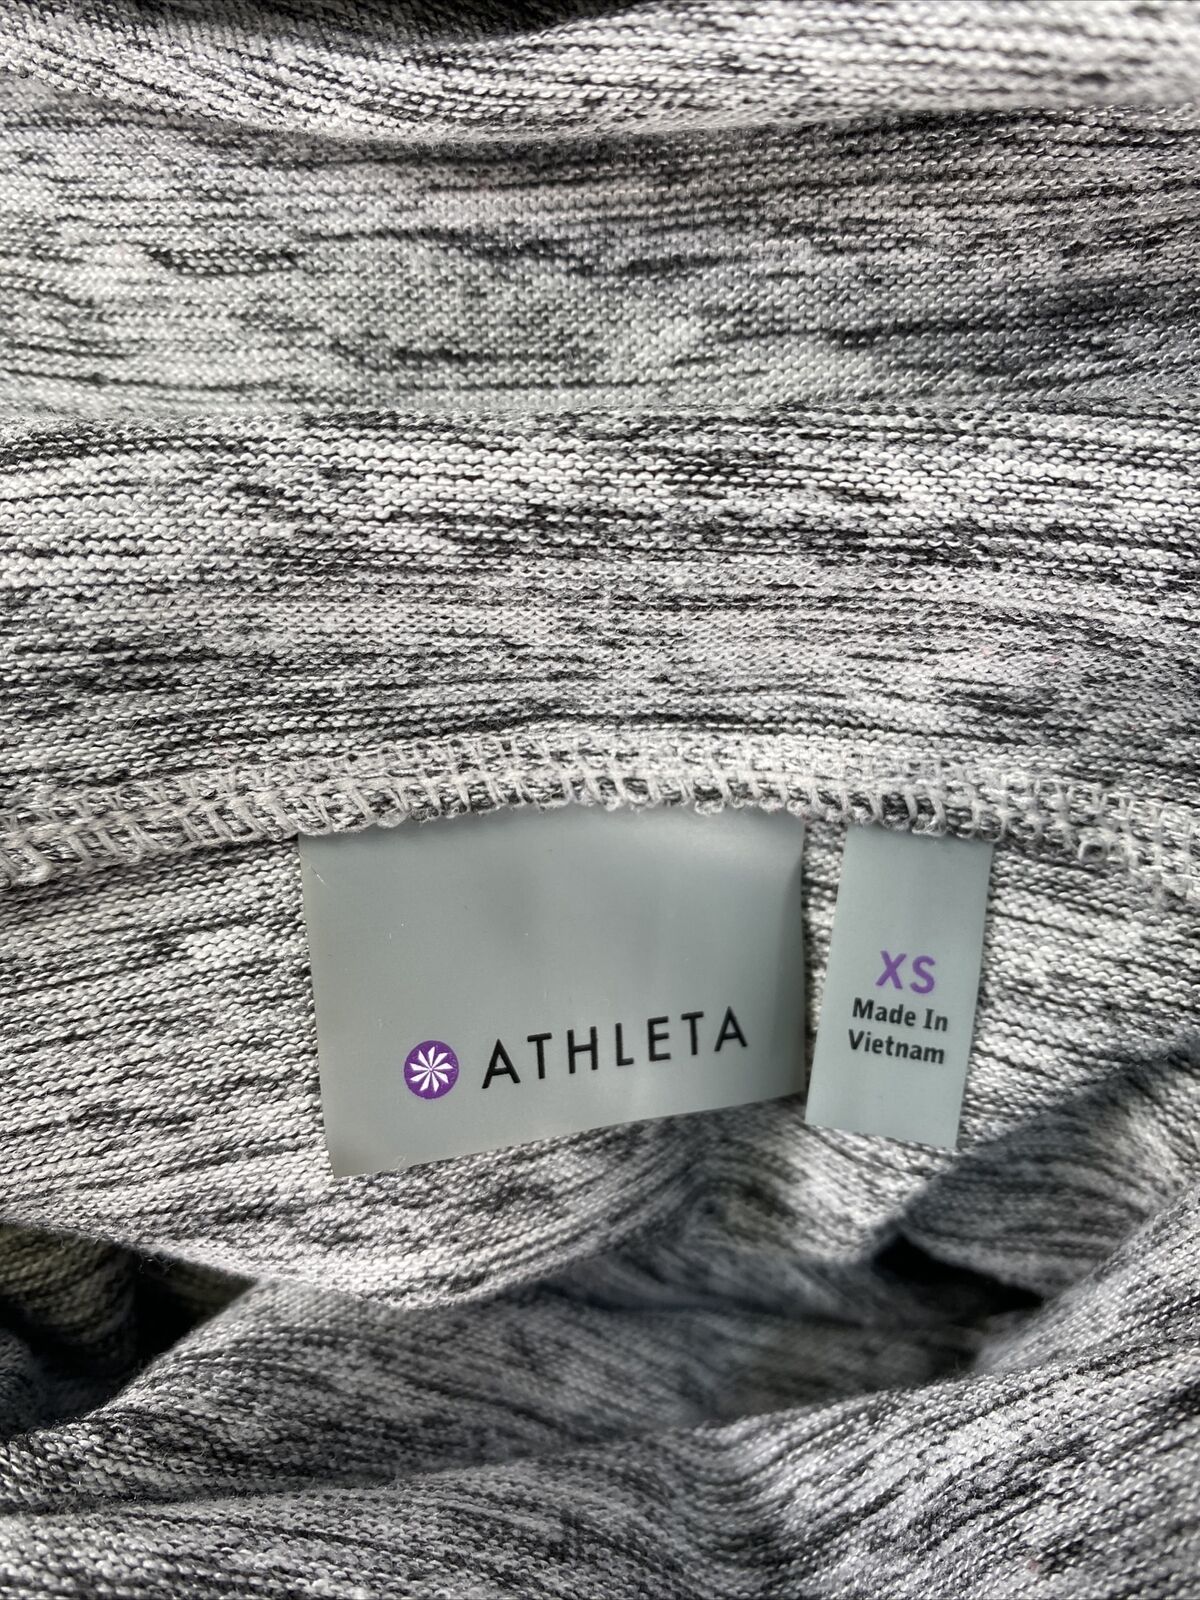 Athleta - Sudadera con capucha y cuello de capucha para mujer, color gris, talla XS